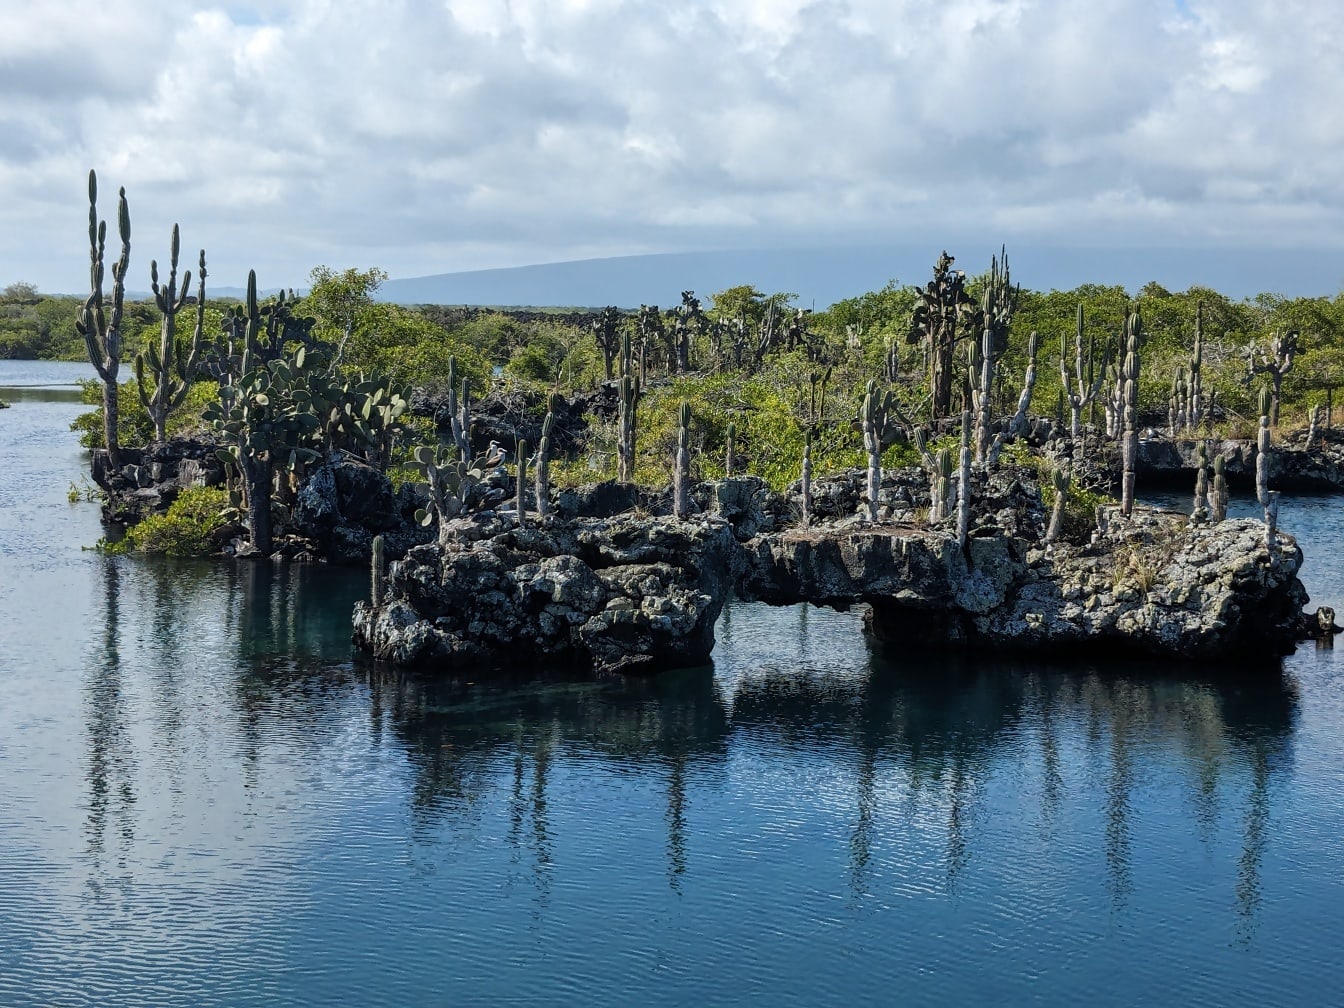 Galapagosin saaren rannikko, jossa on endeemisiä kaktuslajeja (Opuntia galapageias)